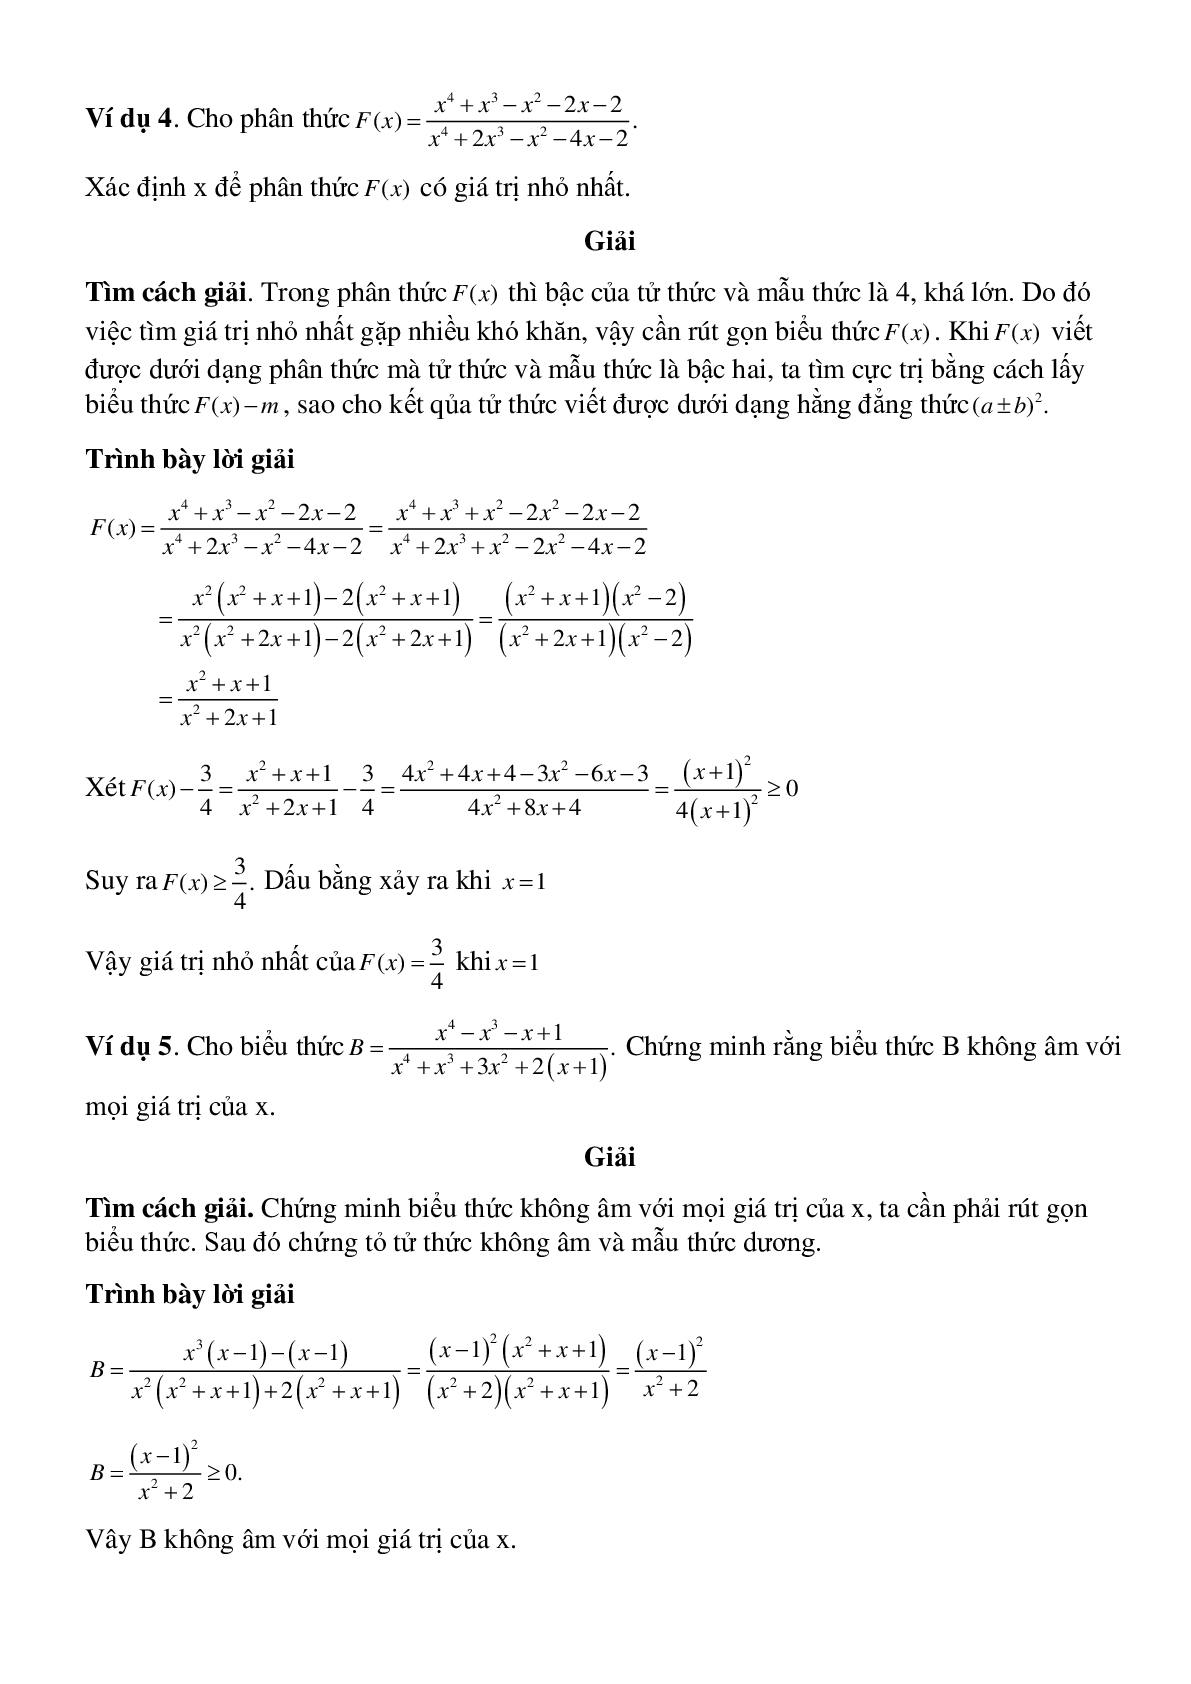 Rút gọn phân thức và phương pháp giải (trang 3)